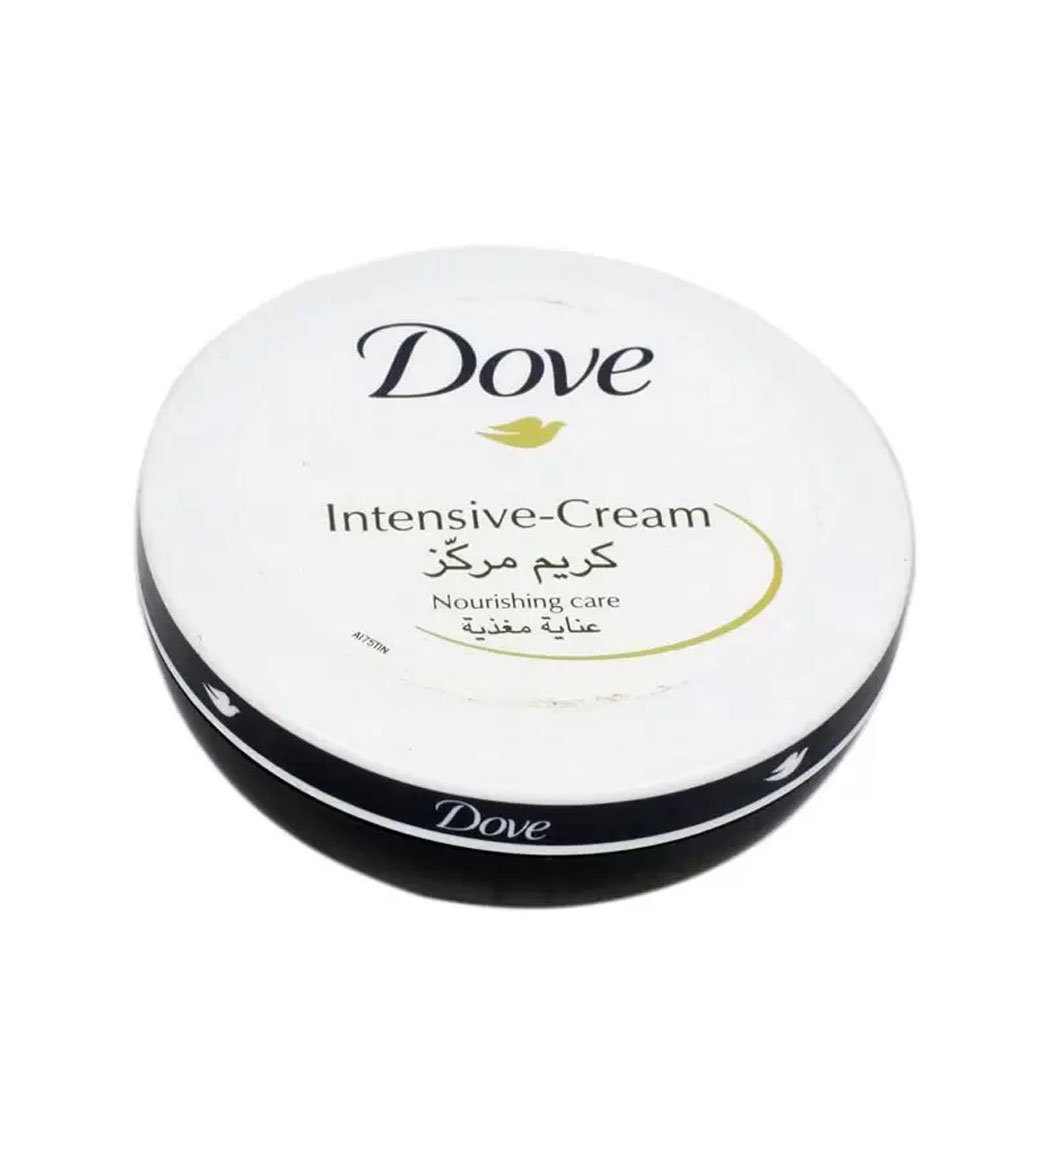 Dove intensive cream